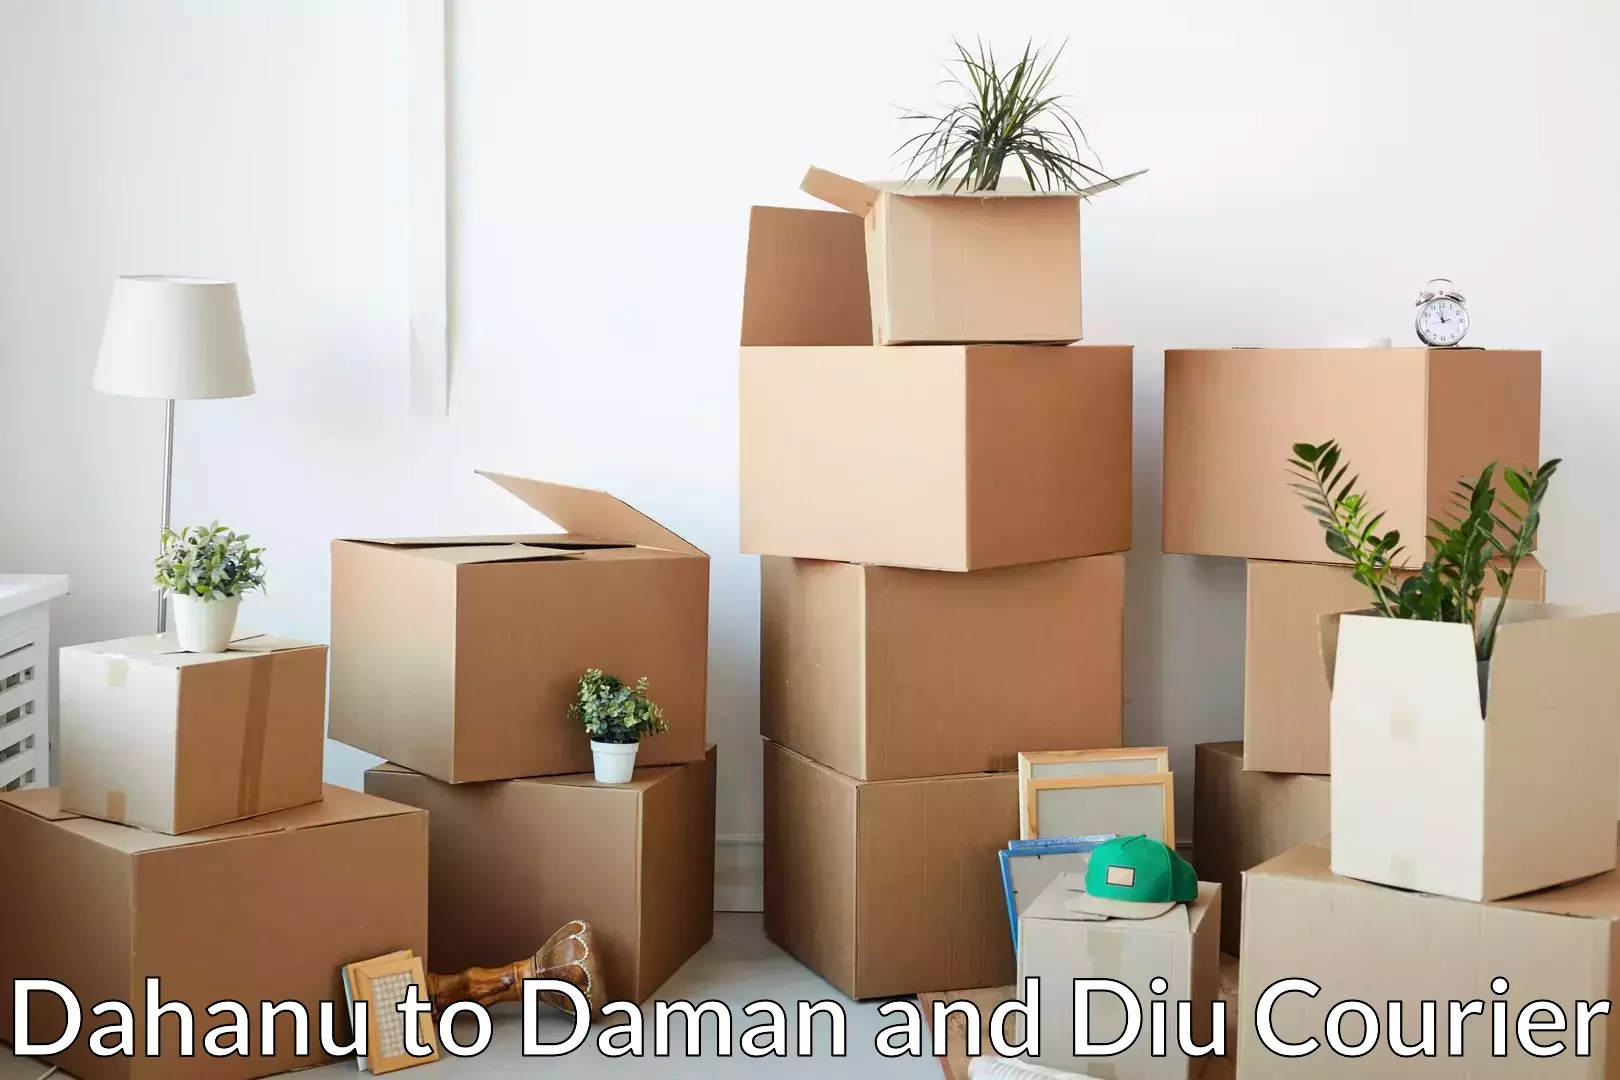 Professional movers in Dahanu to Daman and Diu